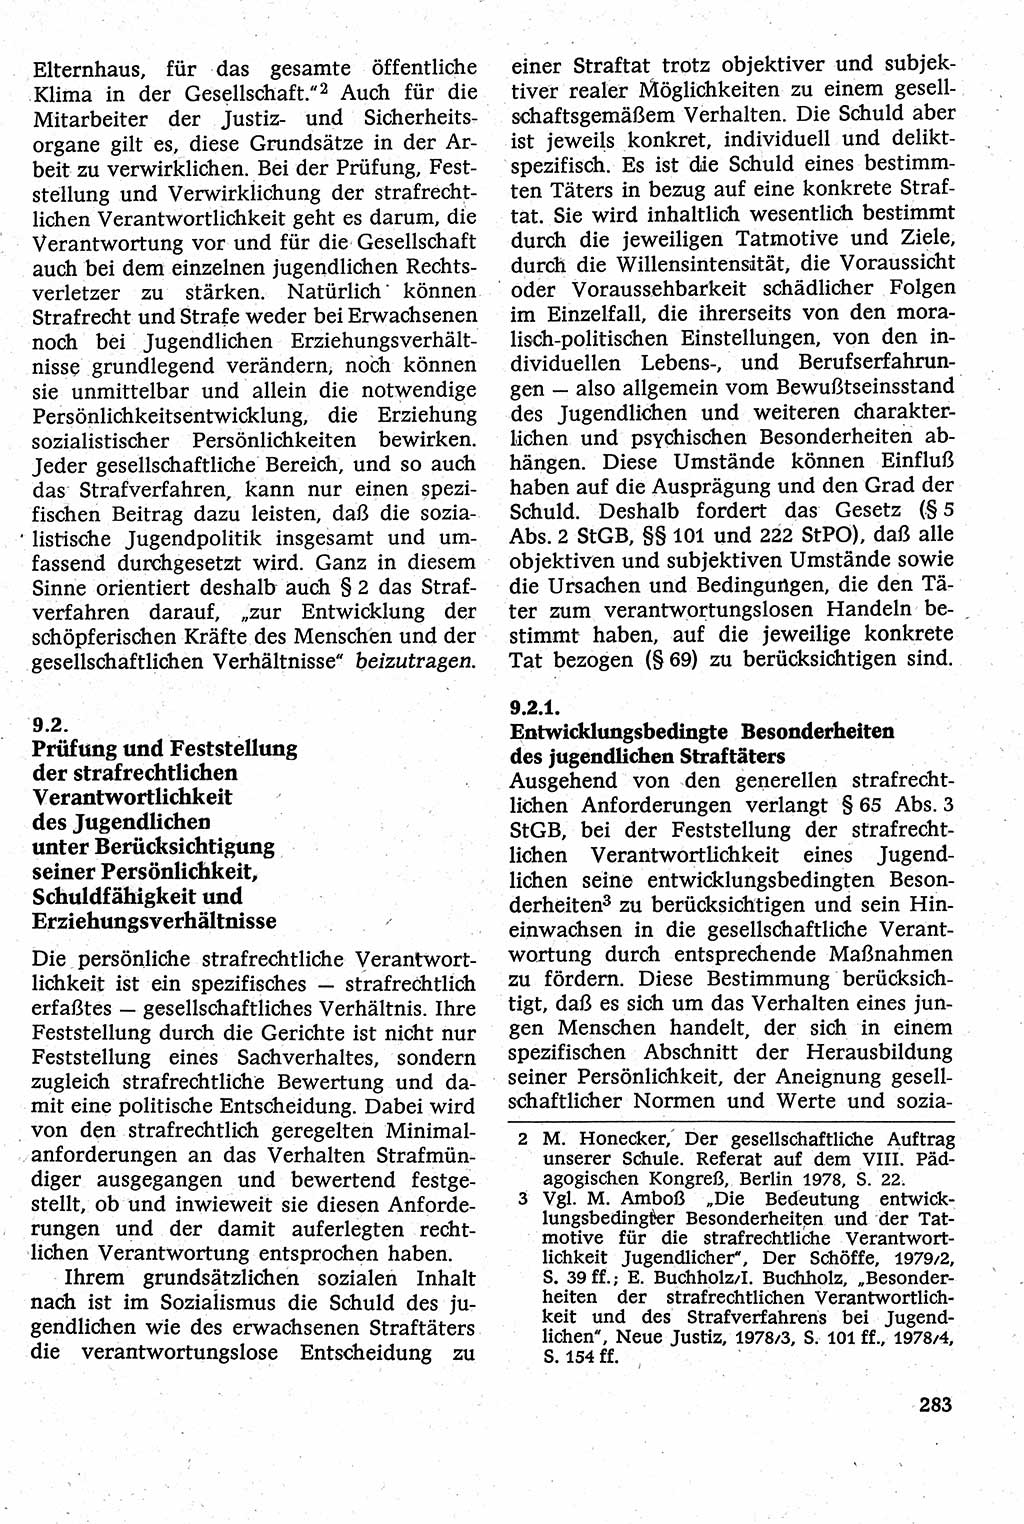 Strafverfahrensrecht [Deutsche Demokratische Republik (DDR)], Lehrbuch 1982, Seite 283 (Strafverf.-R. DDR Lb. 1982, S. 283)